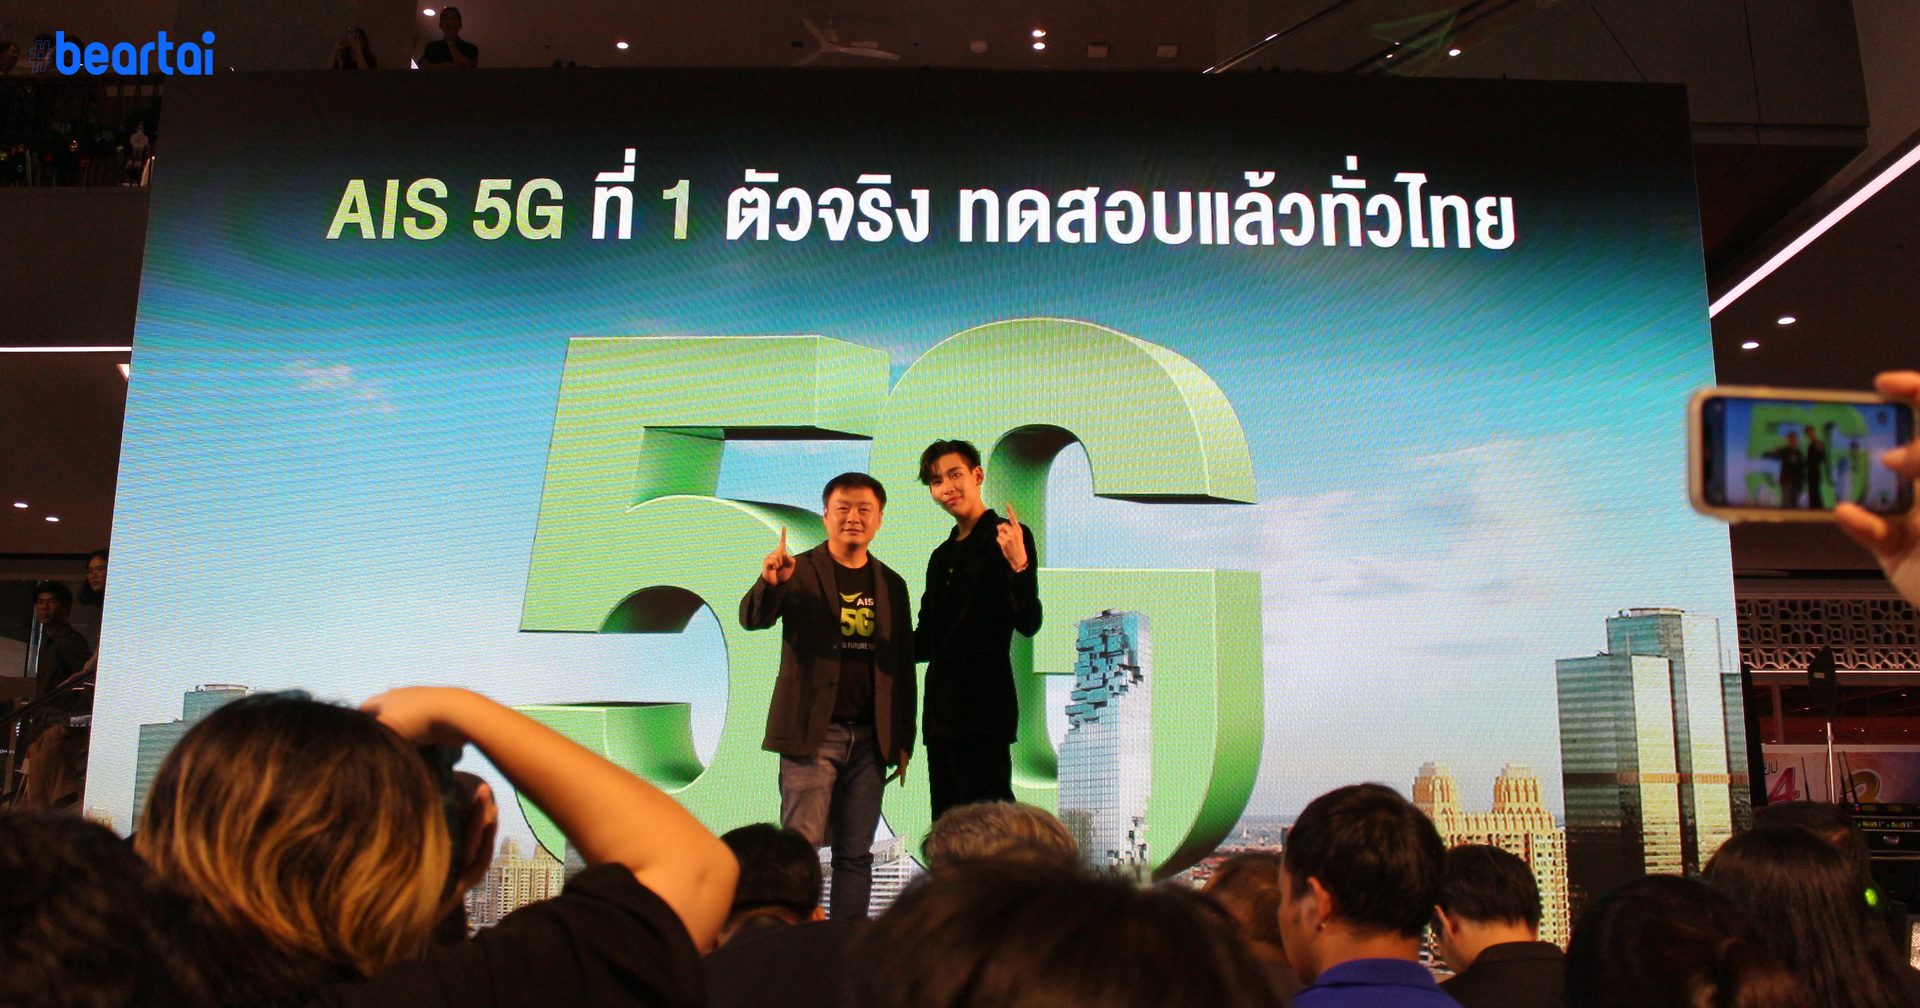 เอไอเอสลุยทดสอบ 5G ครบทั่วทุกภาครายแรกในไทย พร้อมขนทัพนวัตกรรม 5G ให้คนไทยได้สัมผัสแล้ววันนี้ – 3 ม.ค. 63